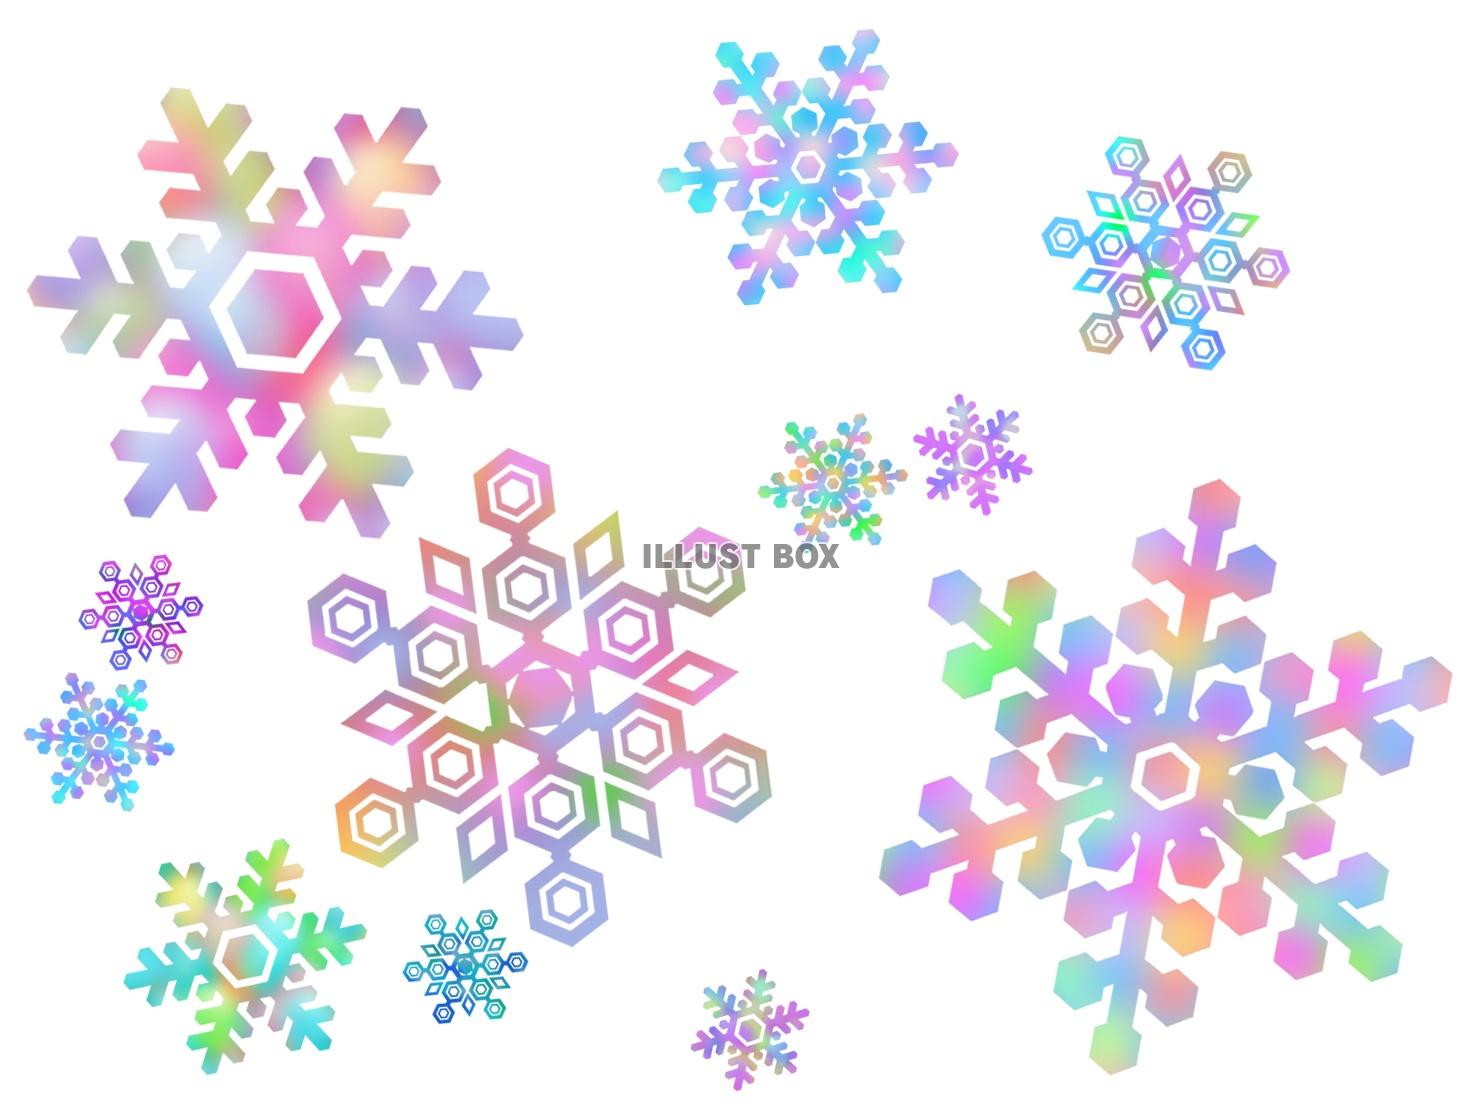 無料イラスト 雪の結晶壁紙画像カラフル背景素材イラスト ベクターあり